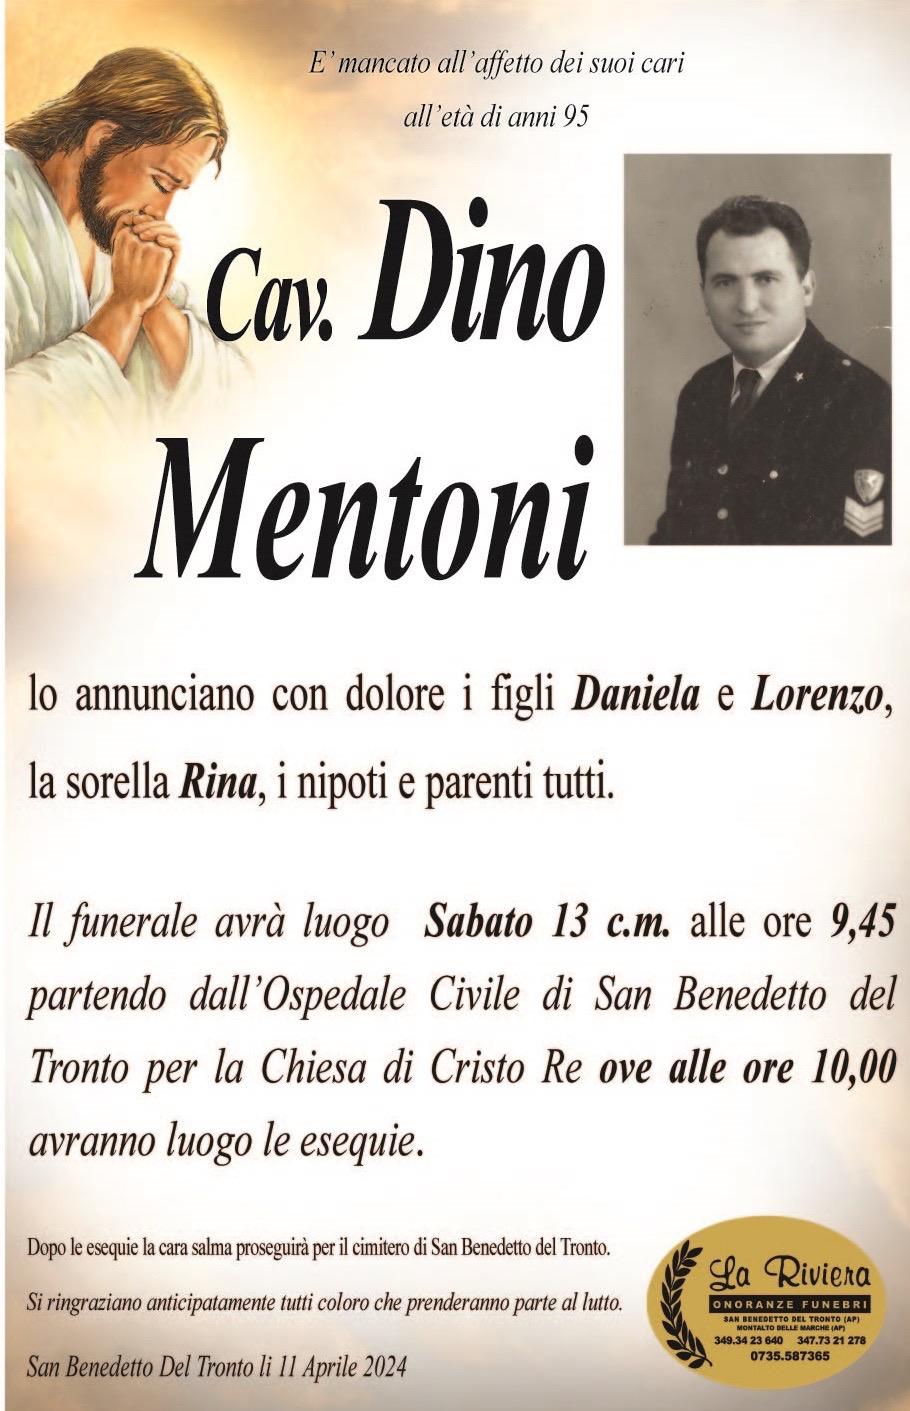 Cav Dino Mentoni